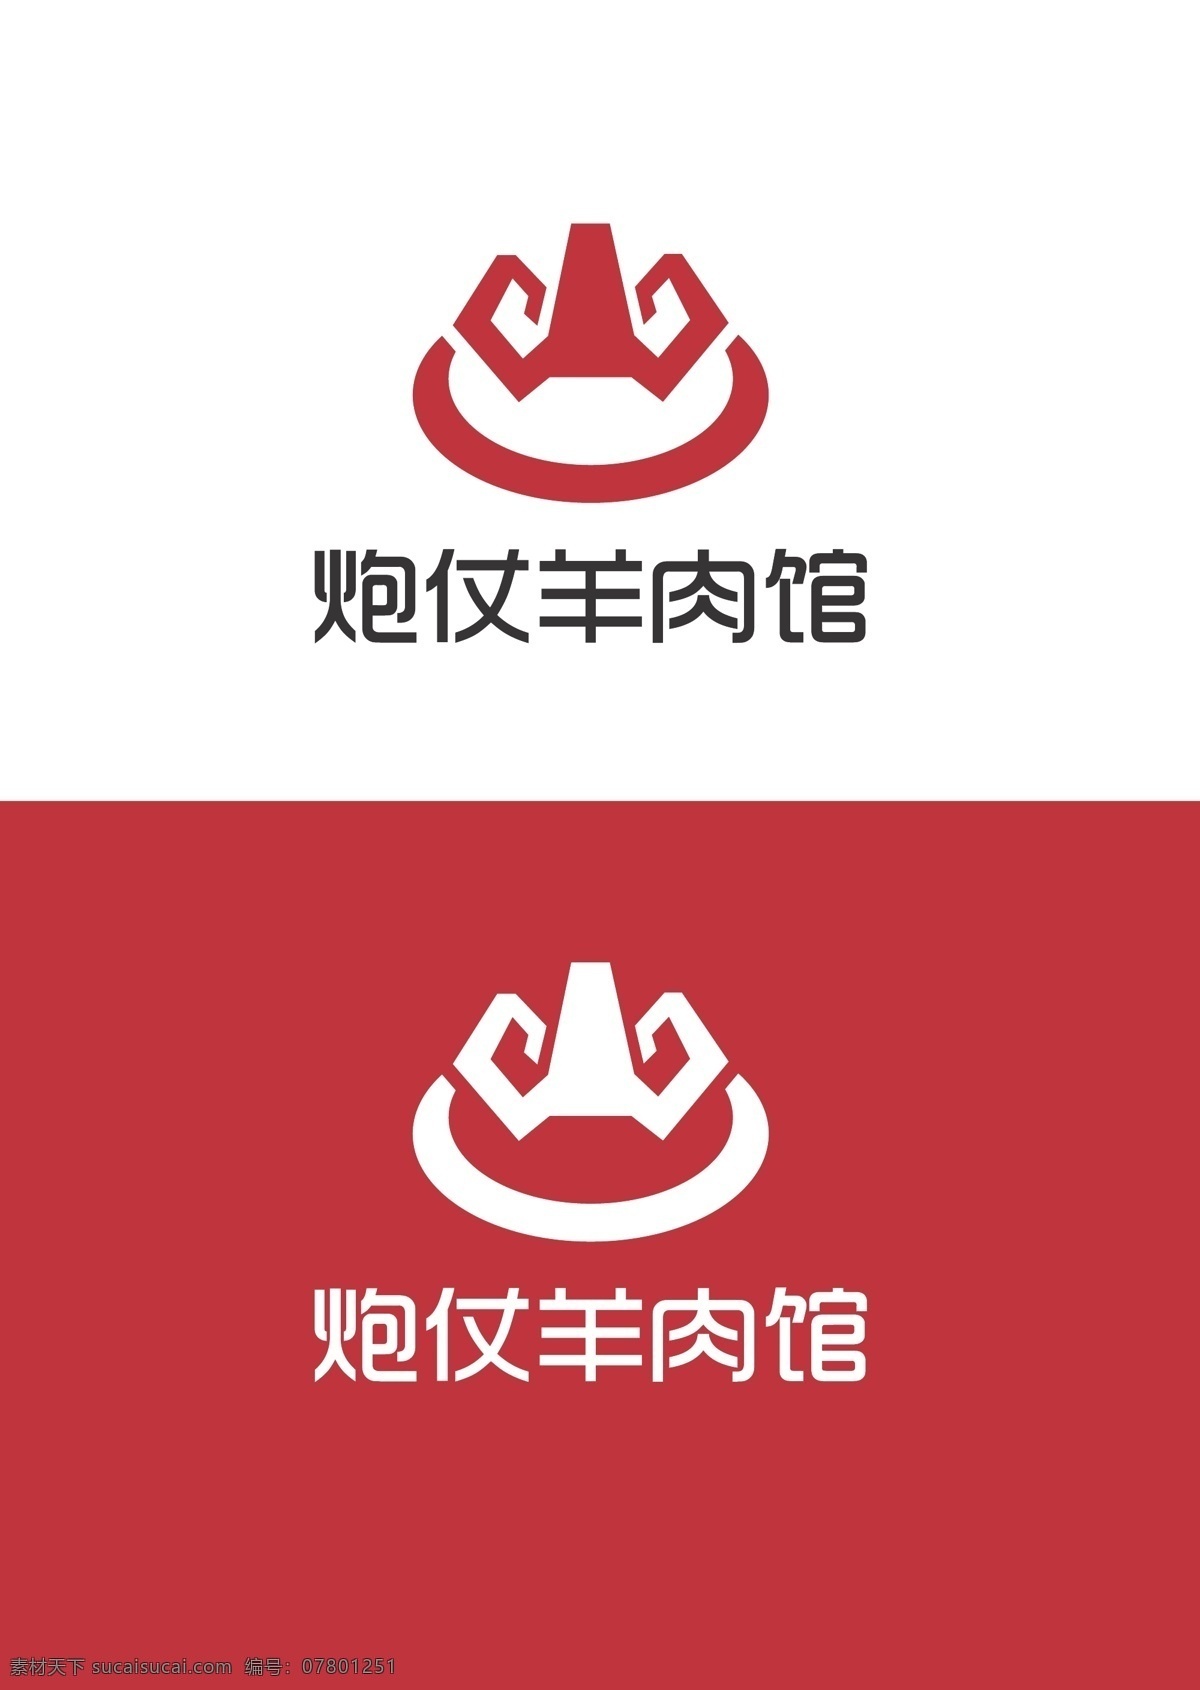 羊肉 馆 标识设计 羊肉馆 标识 火锅 简约 标志图标 其他图标